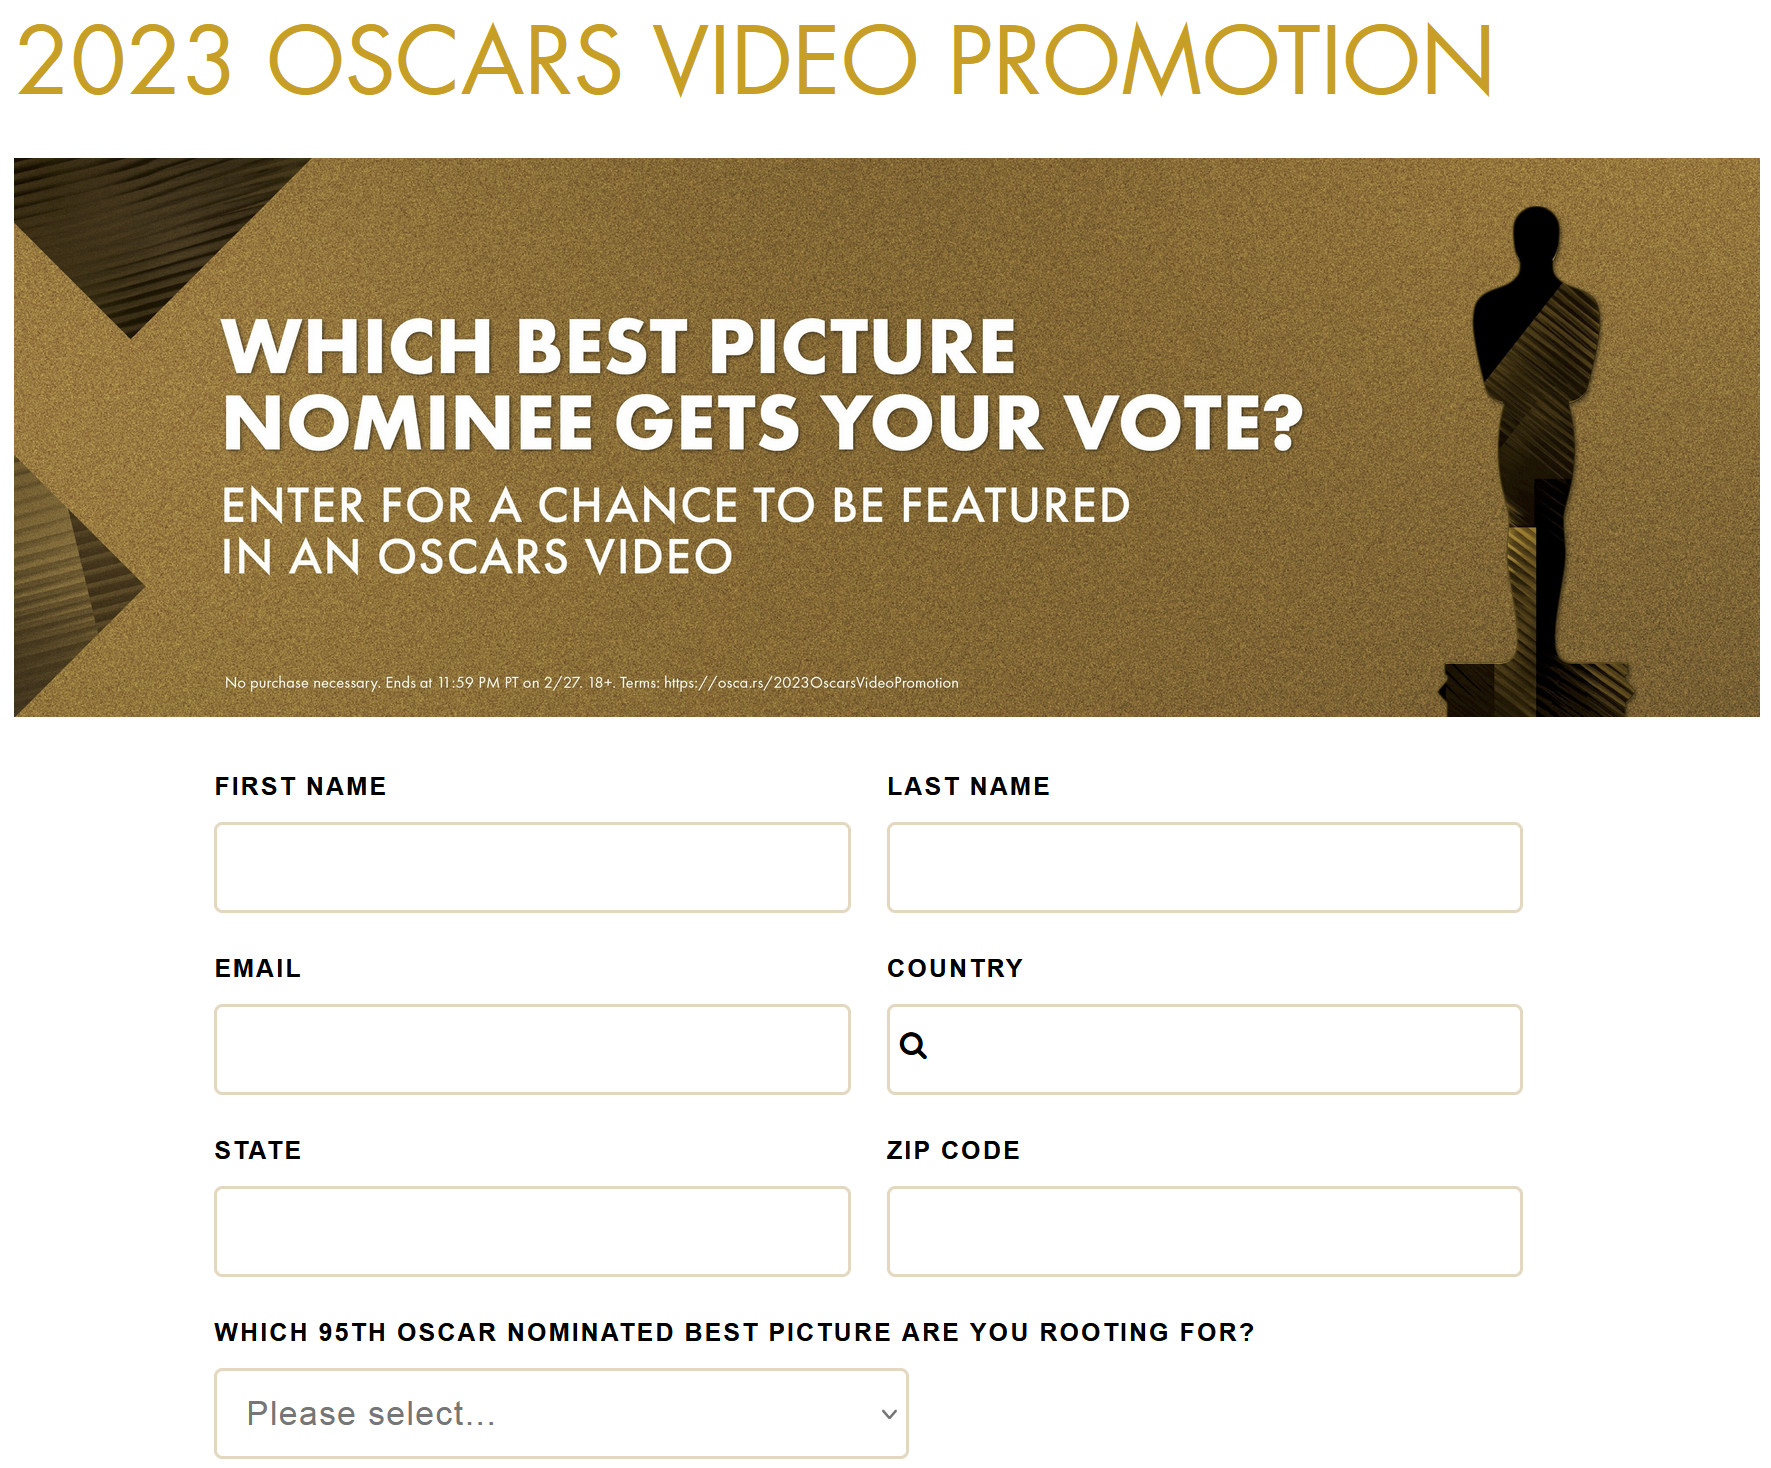 2023 Oscars Video Promotion